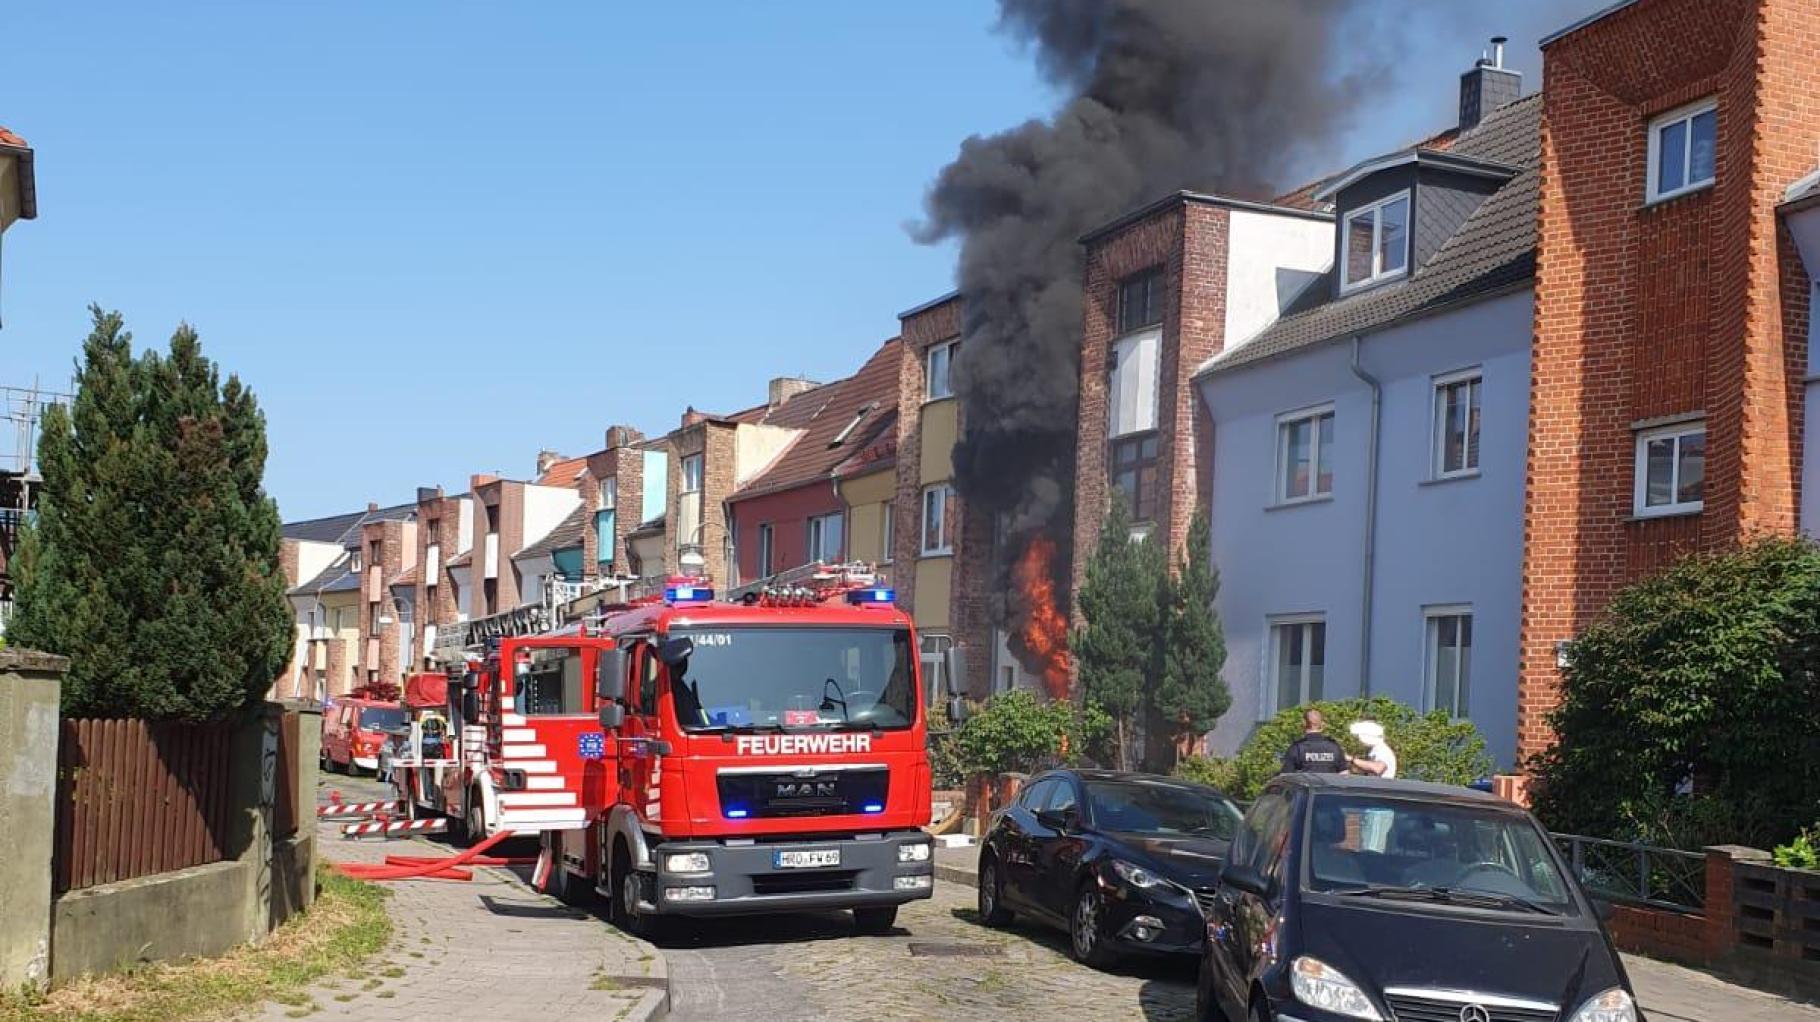 Baustellen und Falschparker behindern die Rostocker Feuerwehr bei Einsätzen